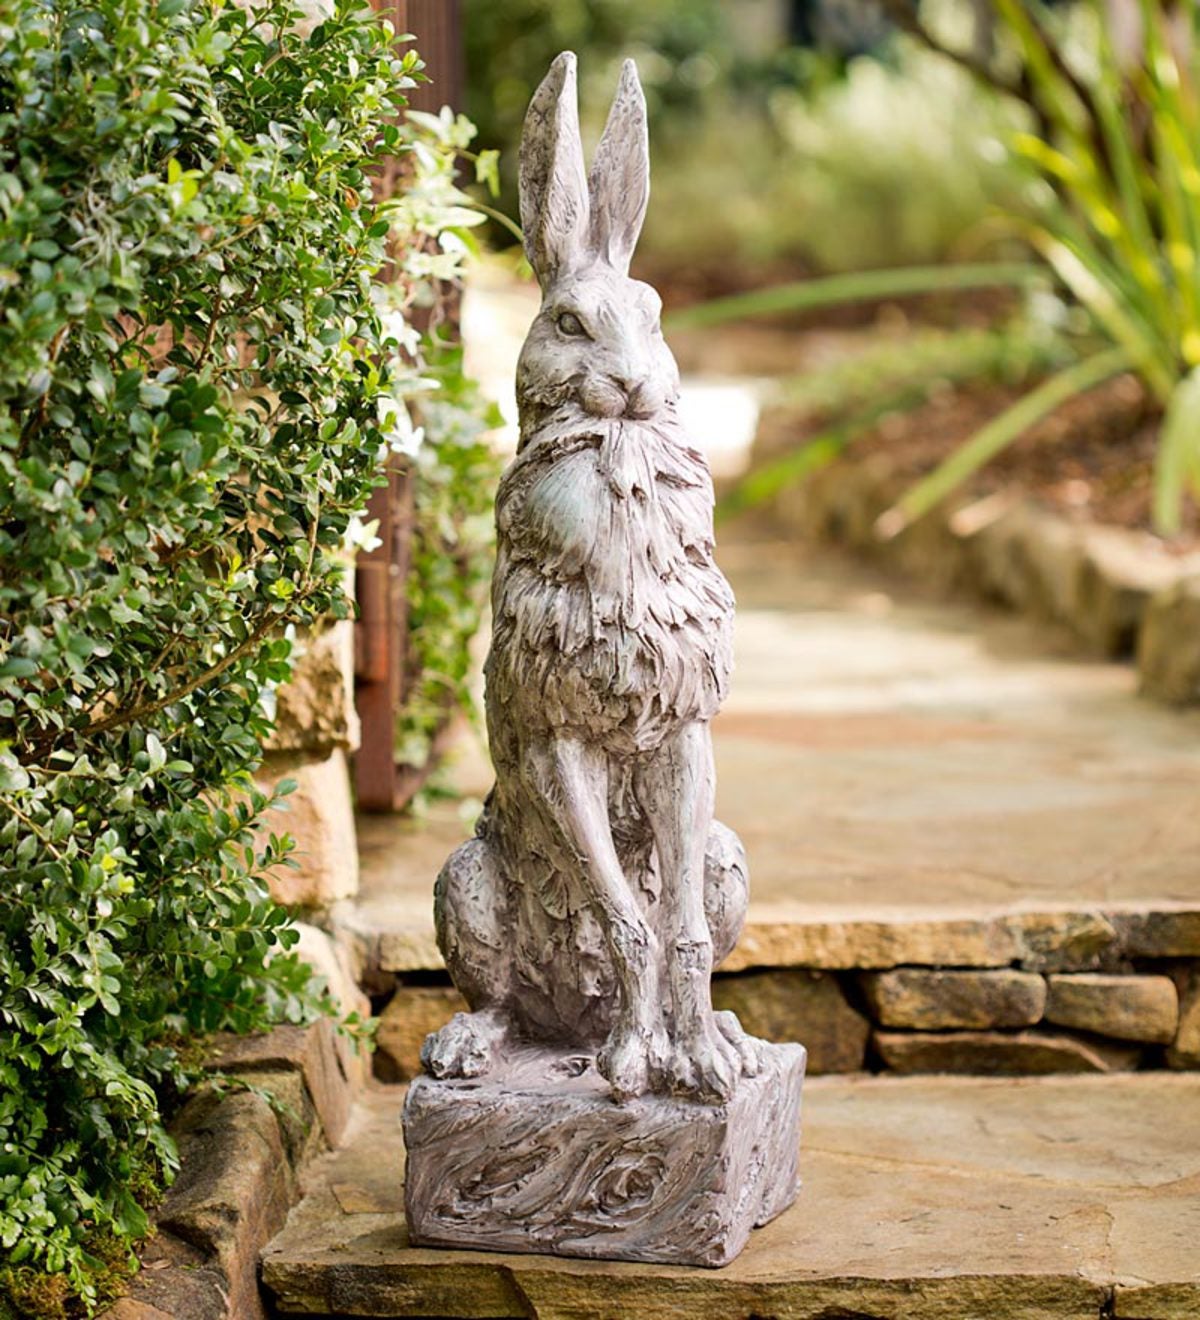 wildlife garden sculpture Natural outdoor statue Hare outdoor sculpture Hare wildlife sculpture Hare garden sculpture